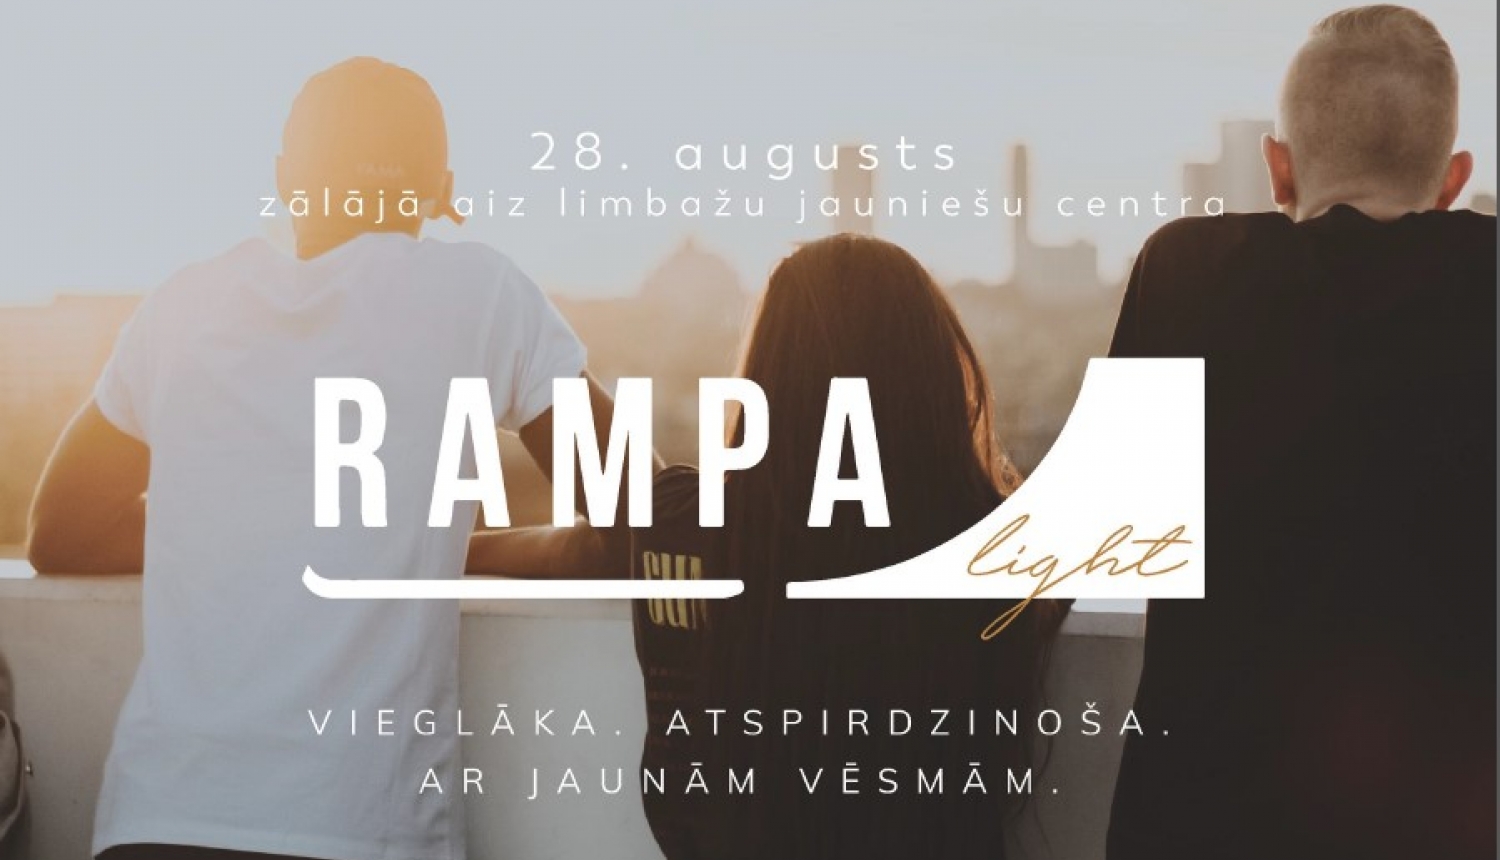 Jau 5. gadu Limbažu Jauniešu centrs rīko vasaras beigu festivālu "RAMPA"